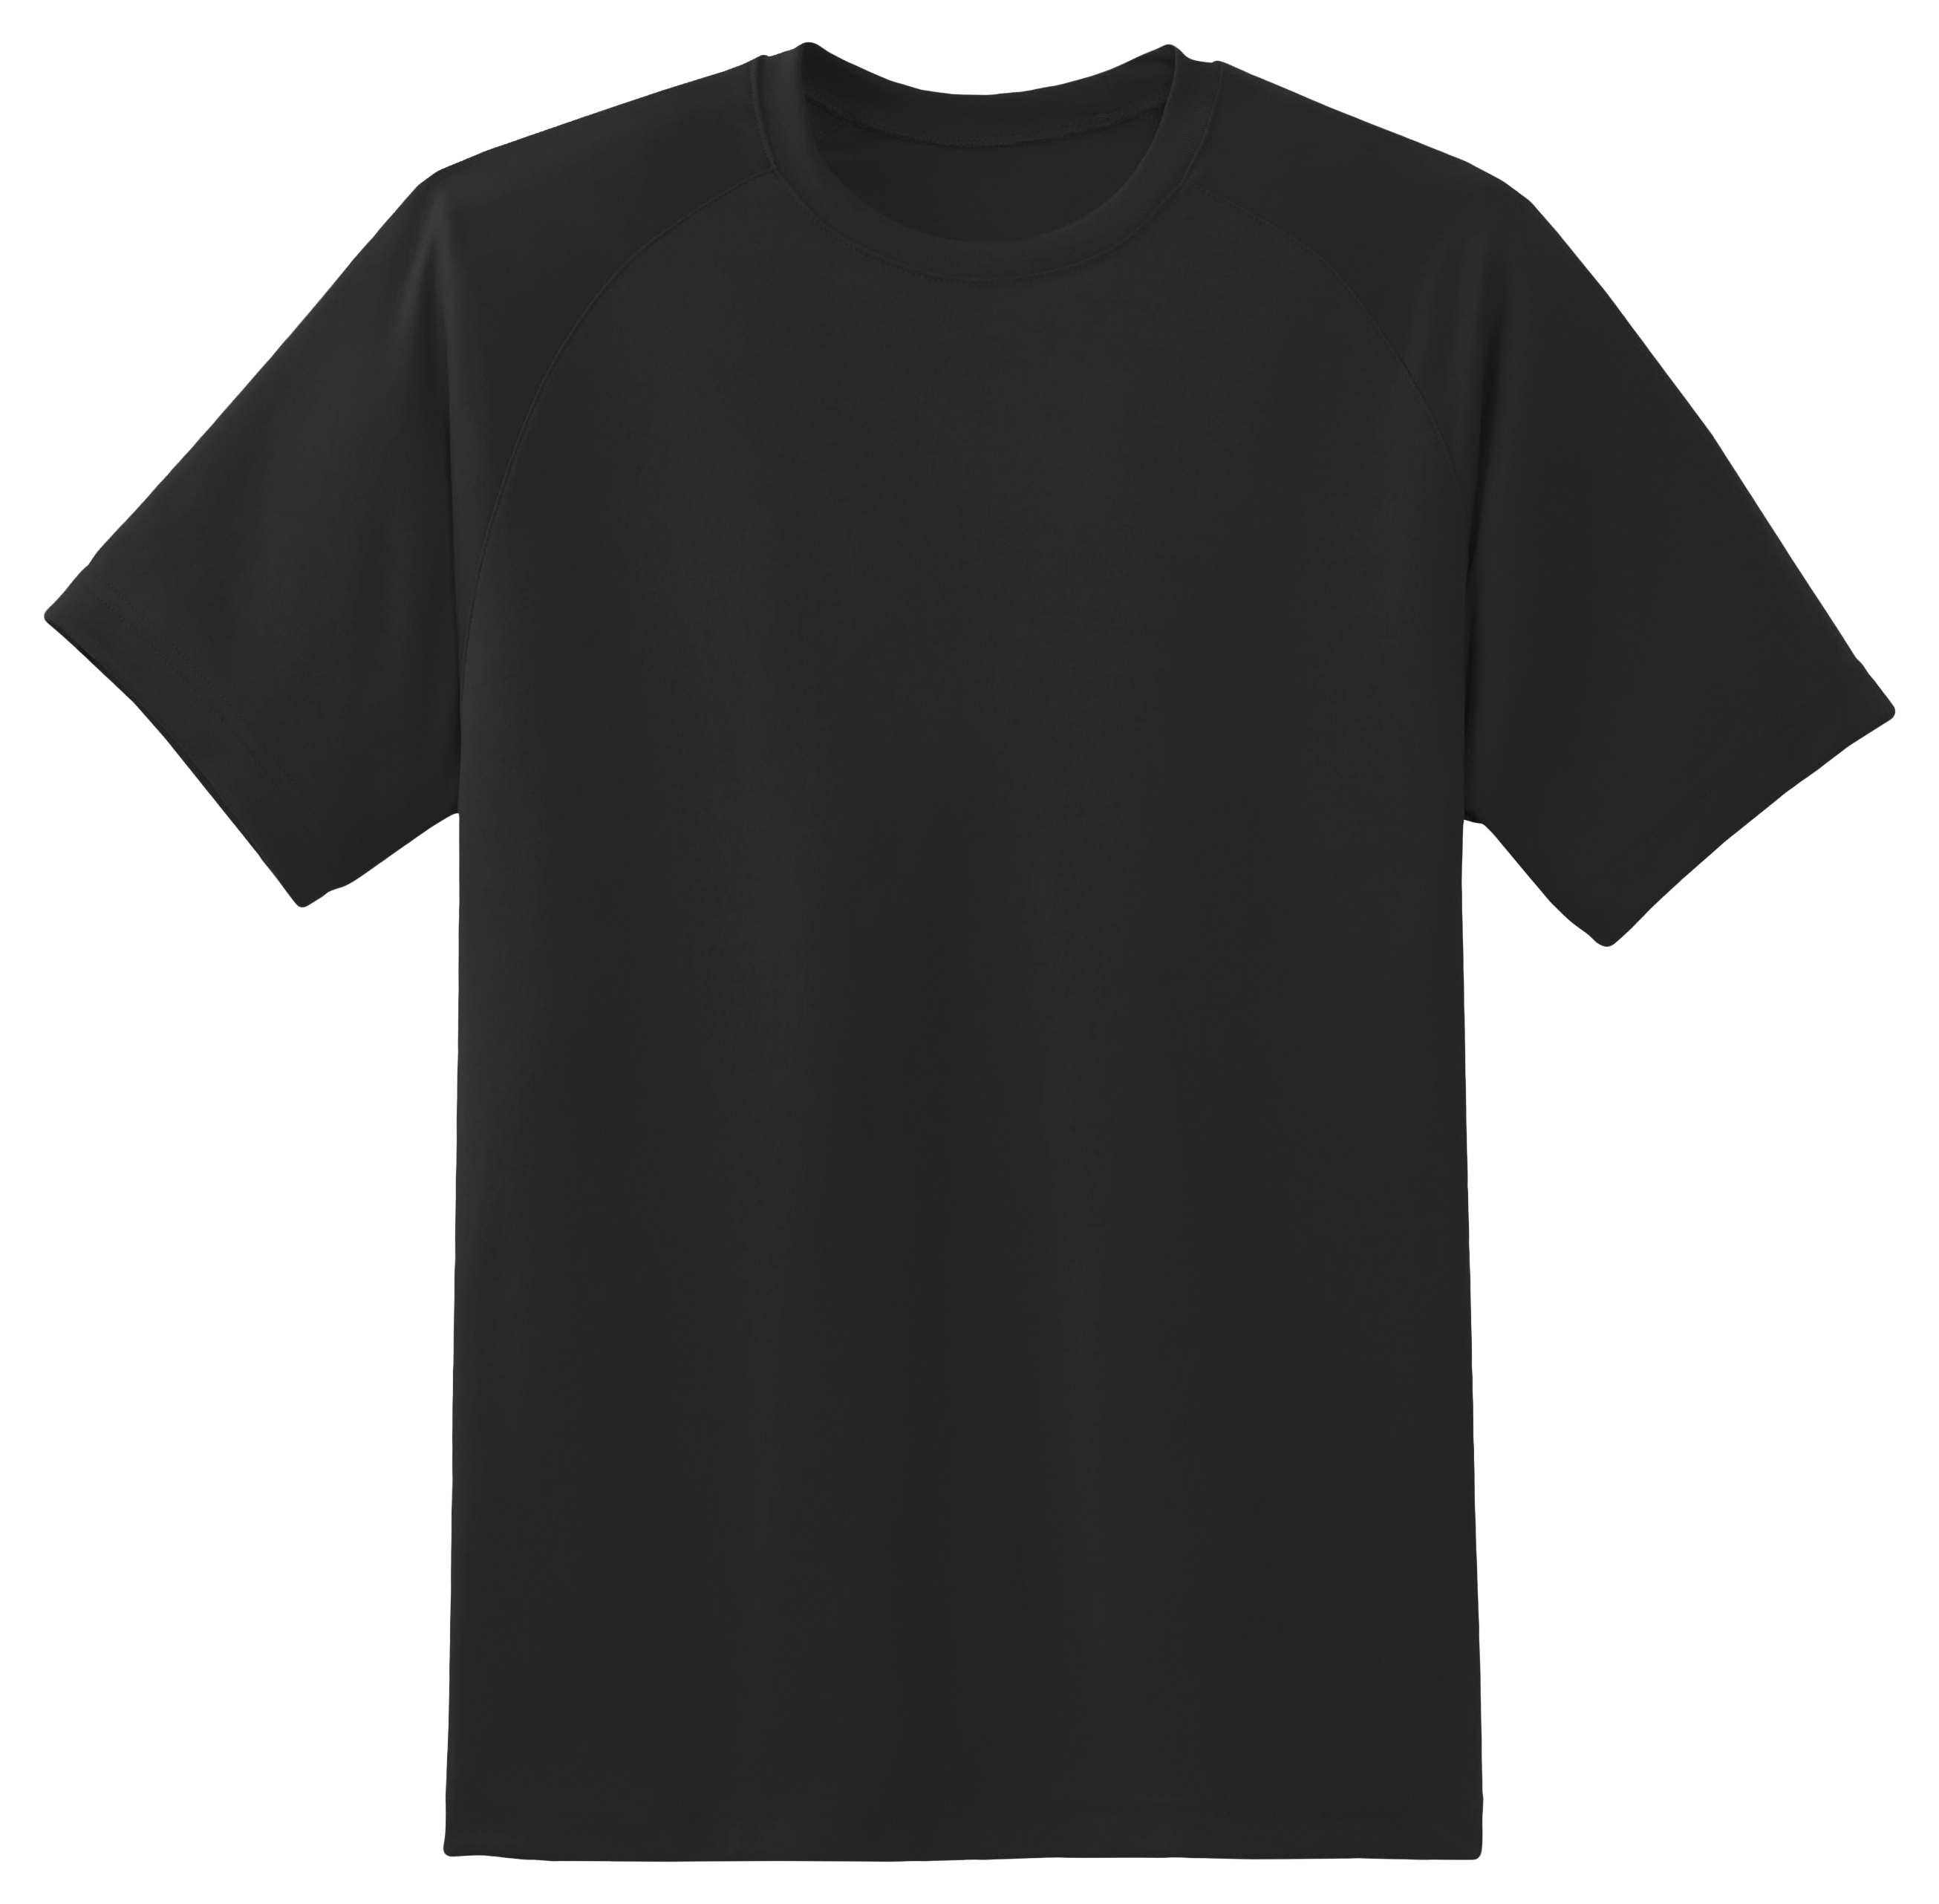 Basic T-Shirt PNG Free File Download